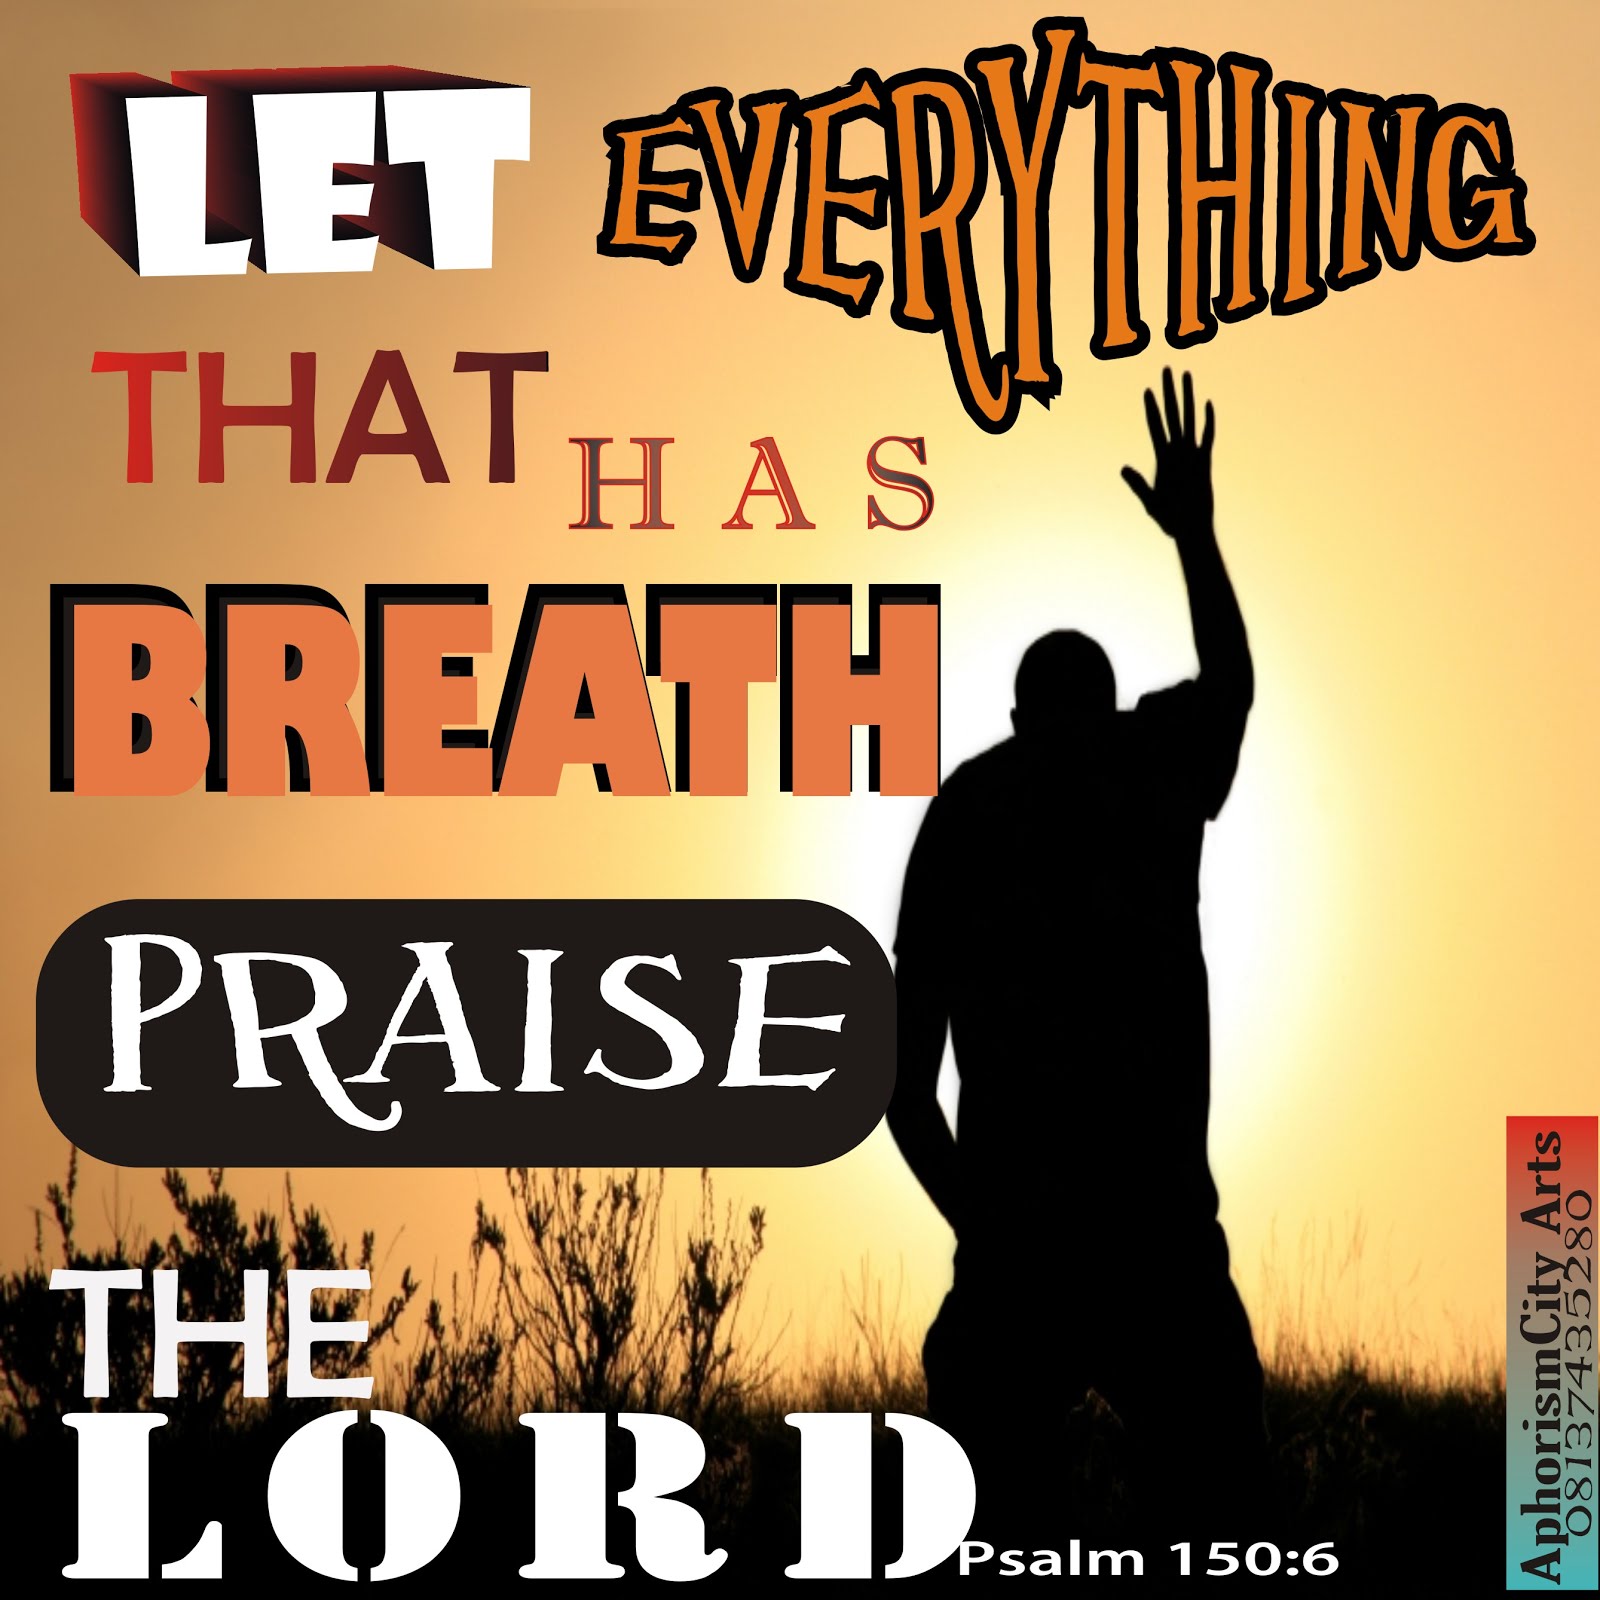 Praise God!